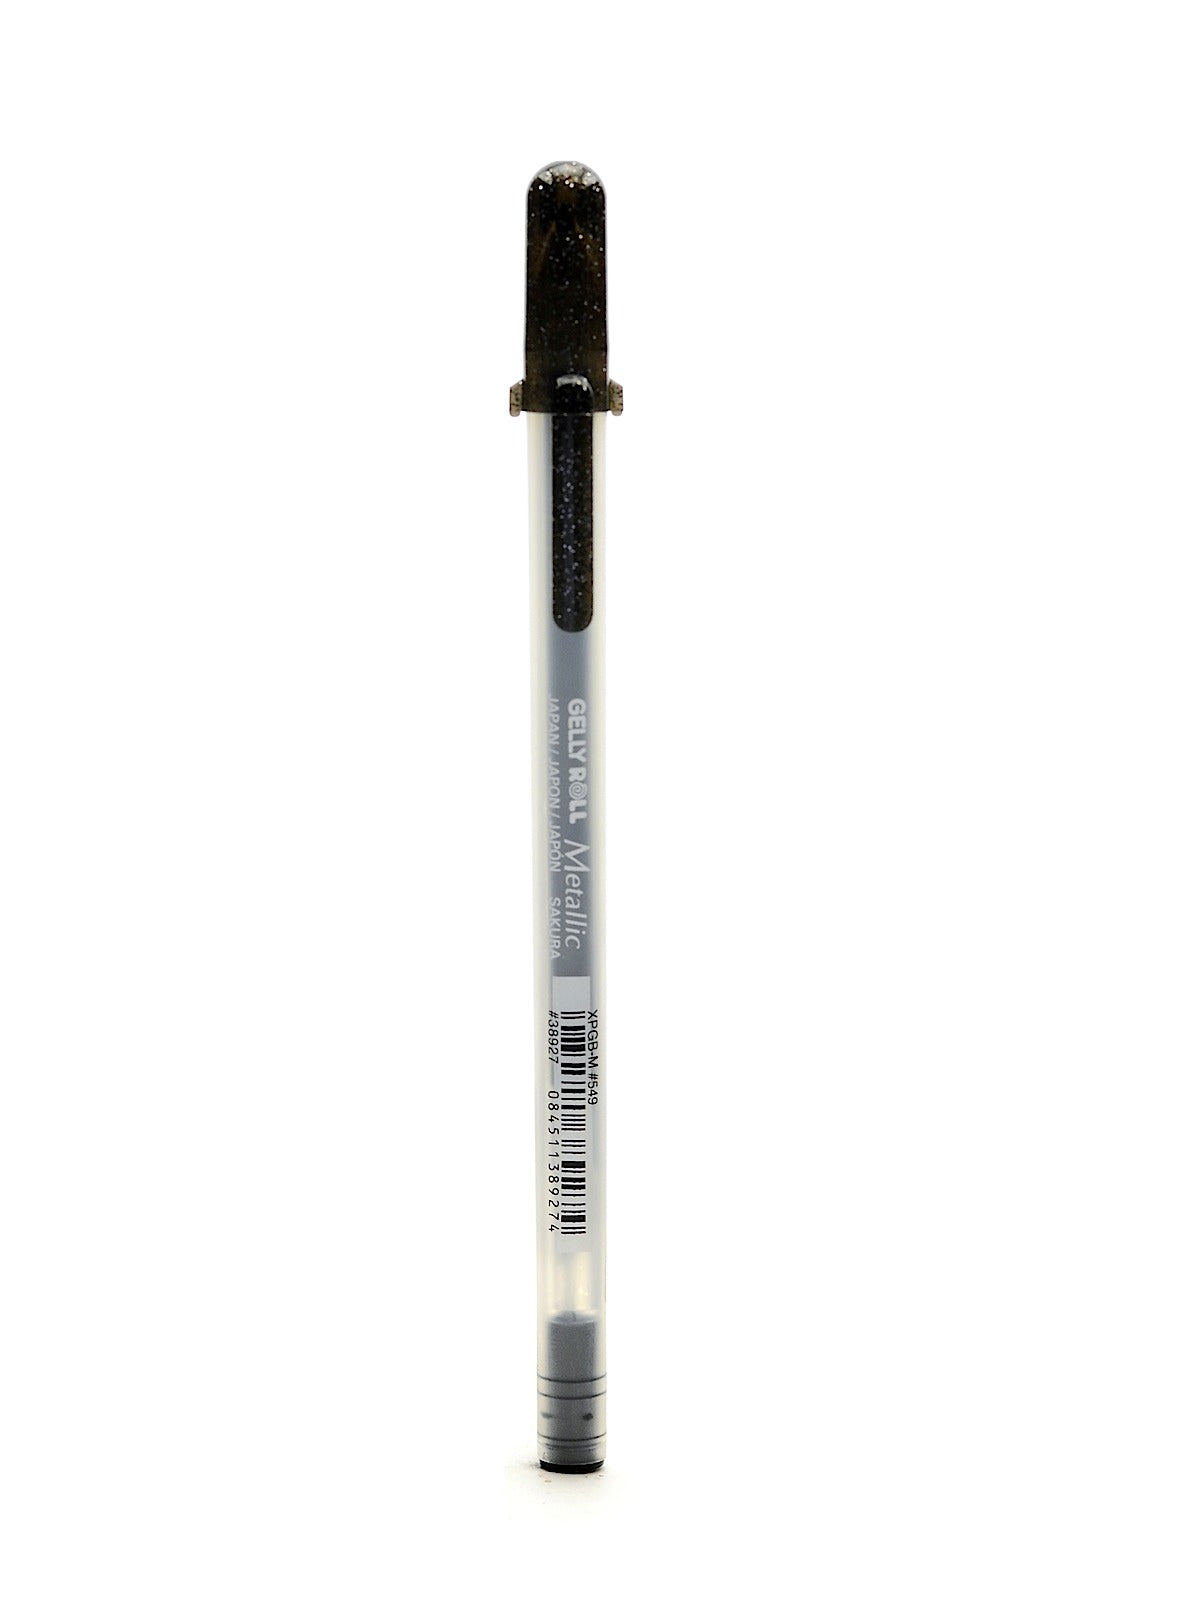 Sakura Gelly Roll Pen - Medium Point Box of 12, Black